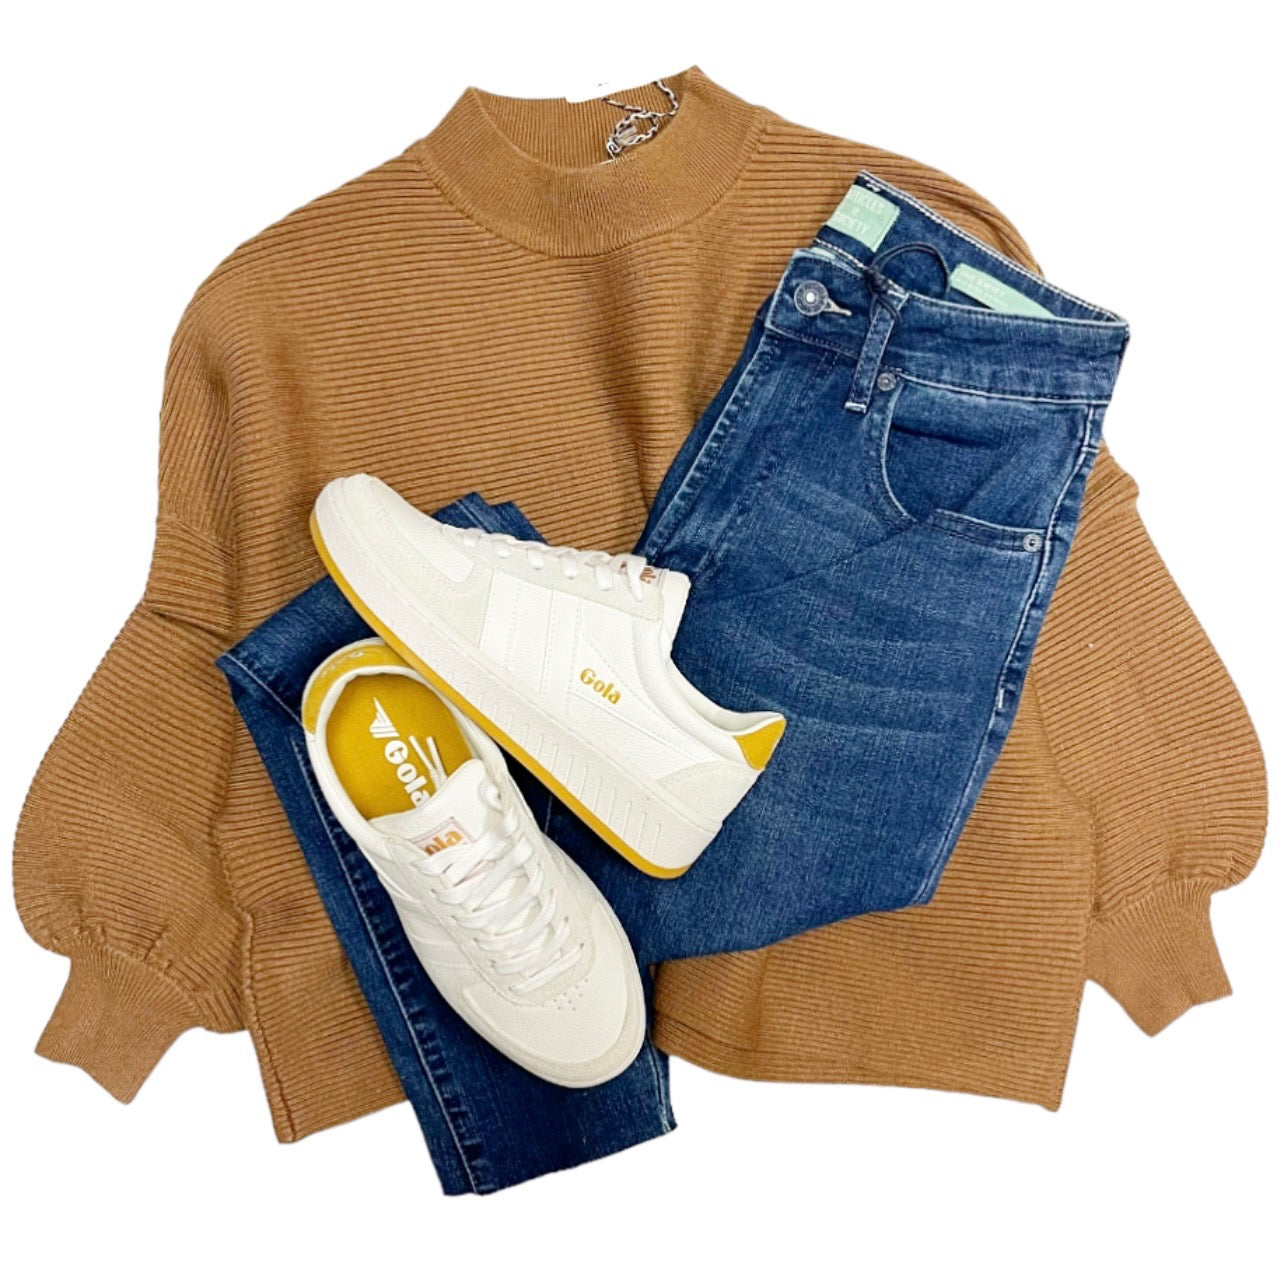 Kendall Sweater Tan